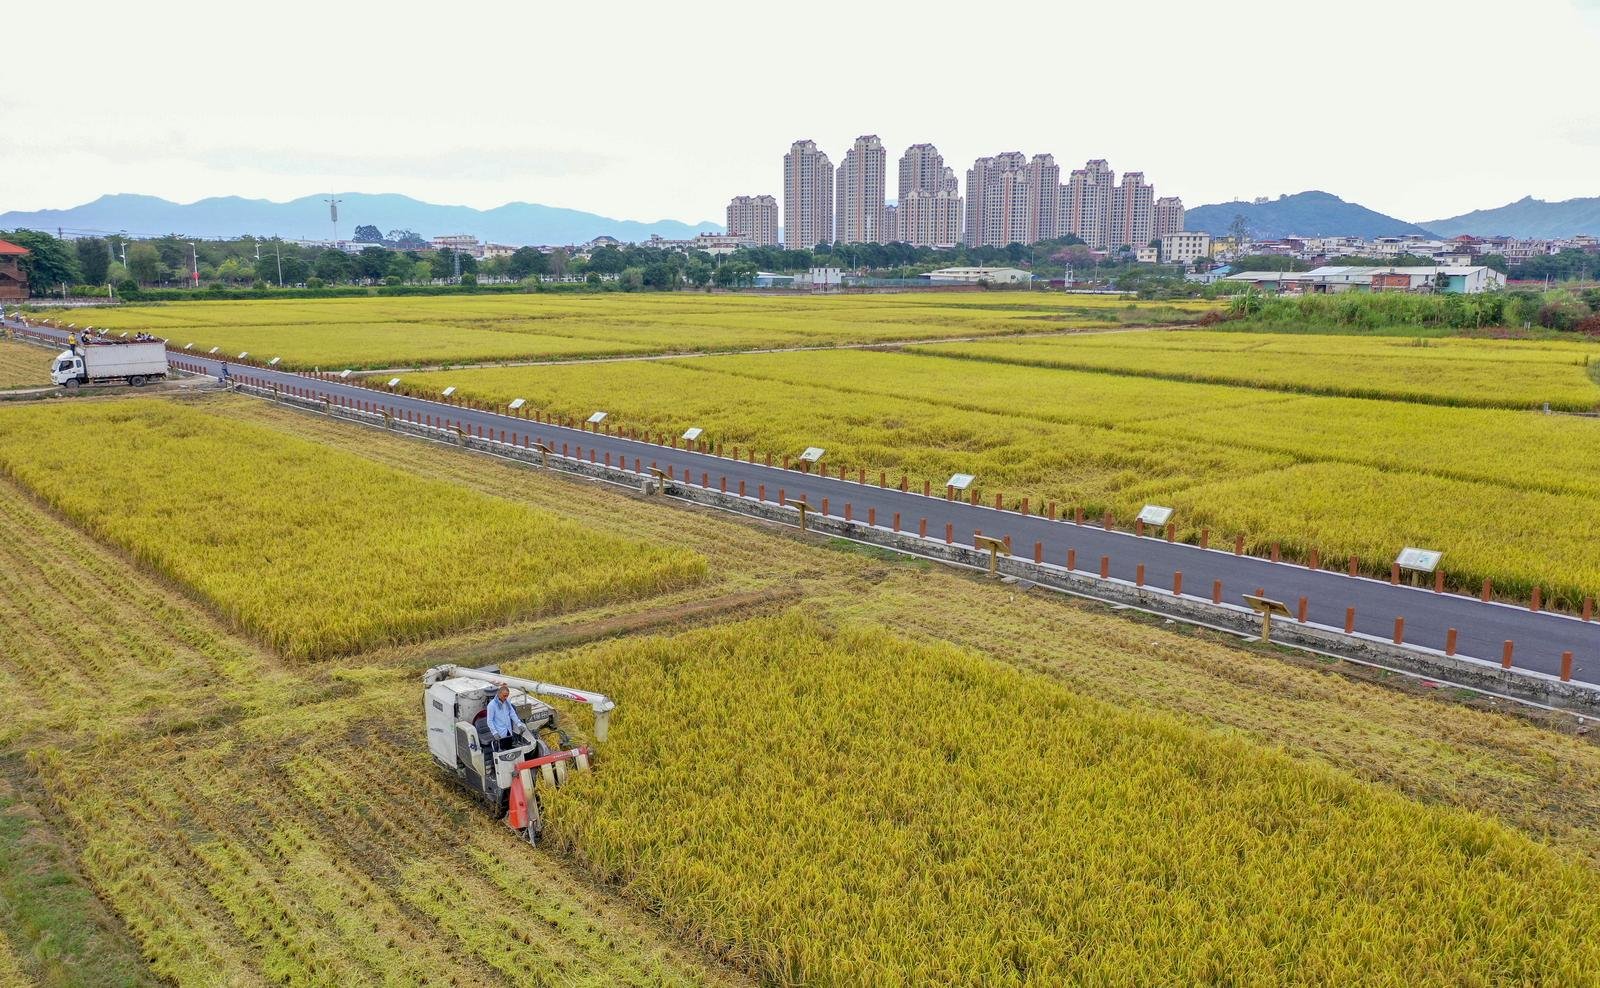 漳州市区水仙花海轮种水稻，成了市民观光游玩、了解农业的好地方。福建日报记者 白志强 摄